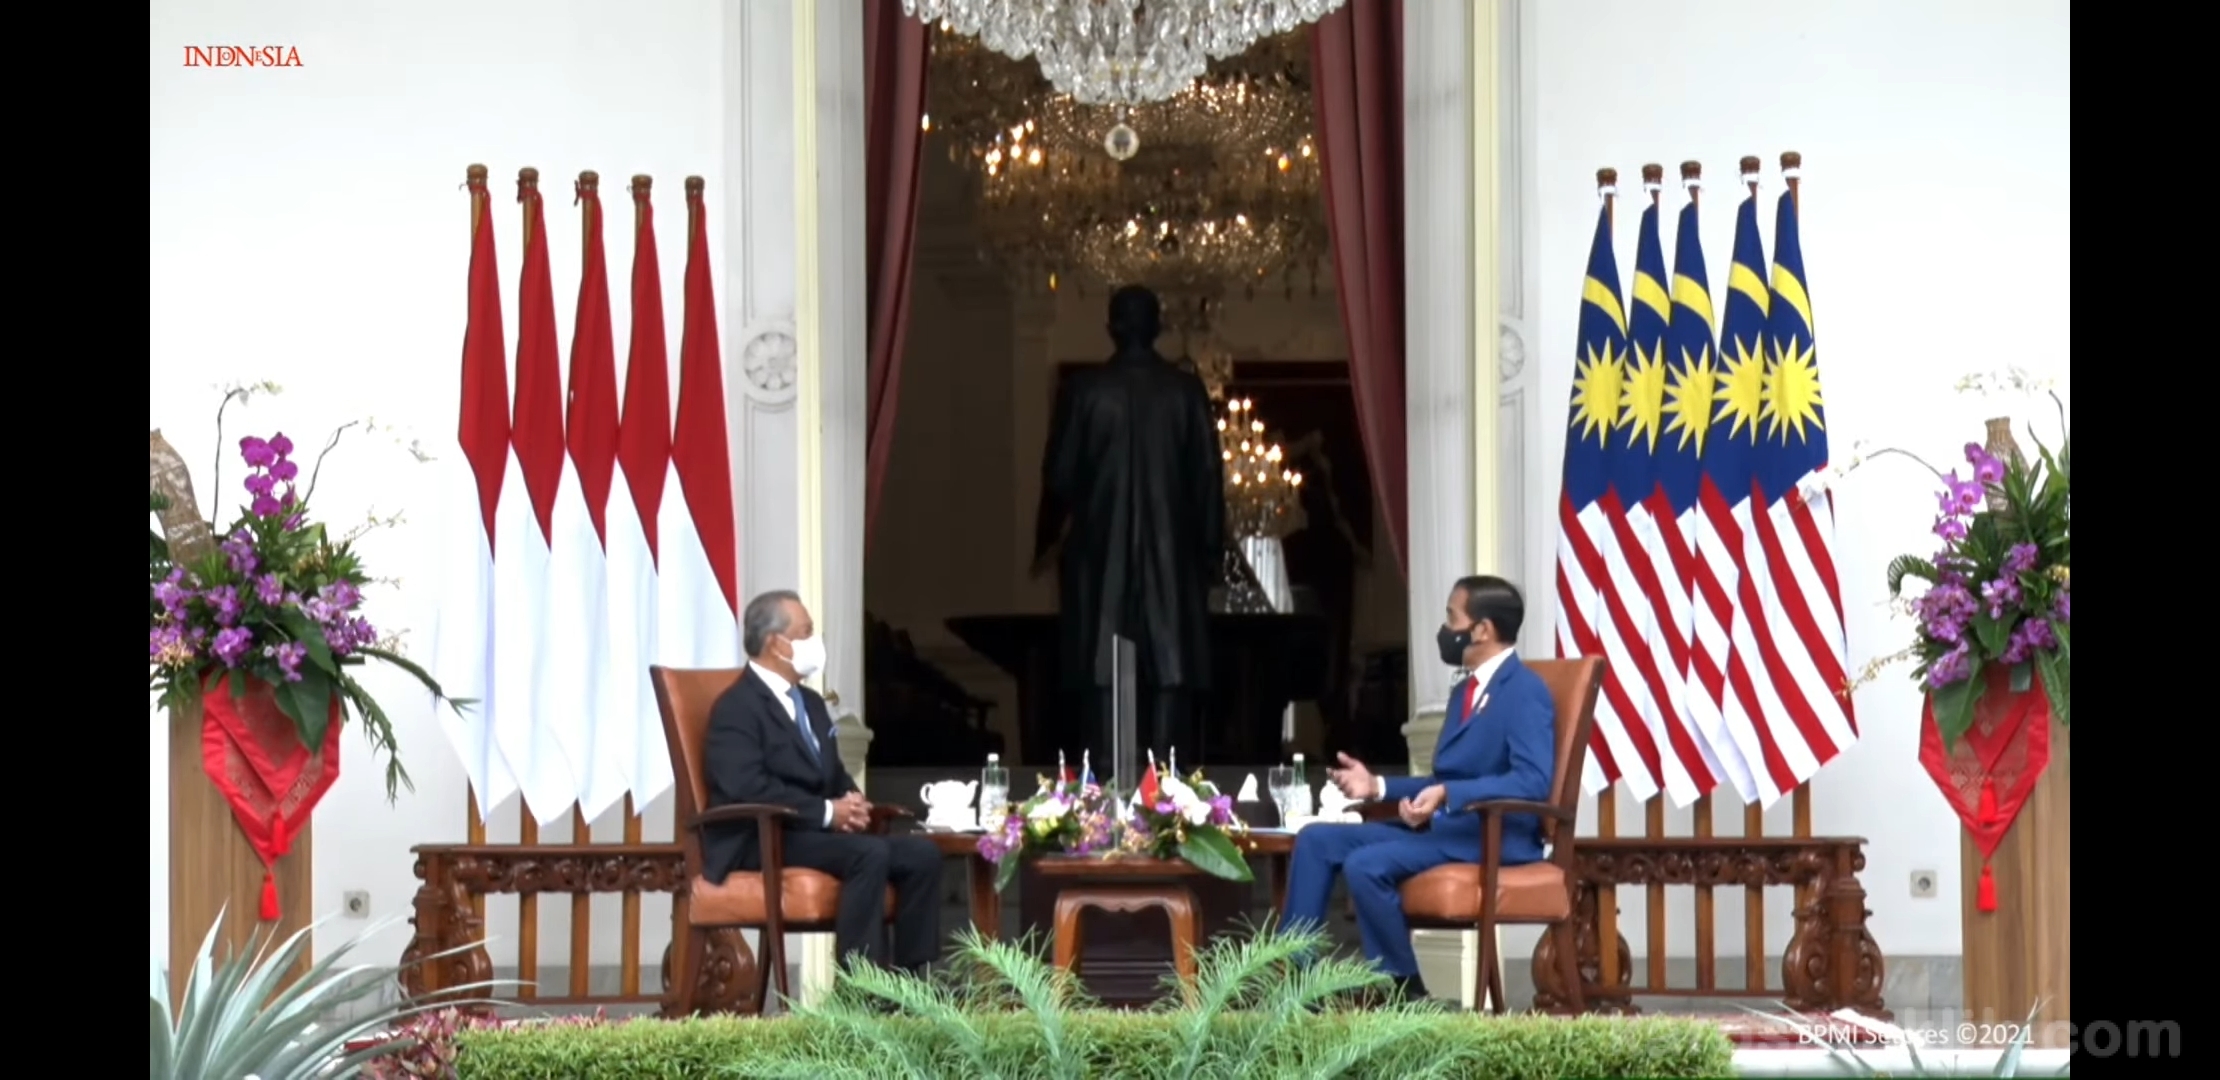 Presiden Jokowi berbincang dengan PM Muhyiddin di teras belakang Istana Merdeka, Jakarta, Jumat (05022021) pagi. (Sumber Tangkapan Layar YouTube Sekretariat Presiden RI.